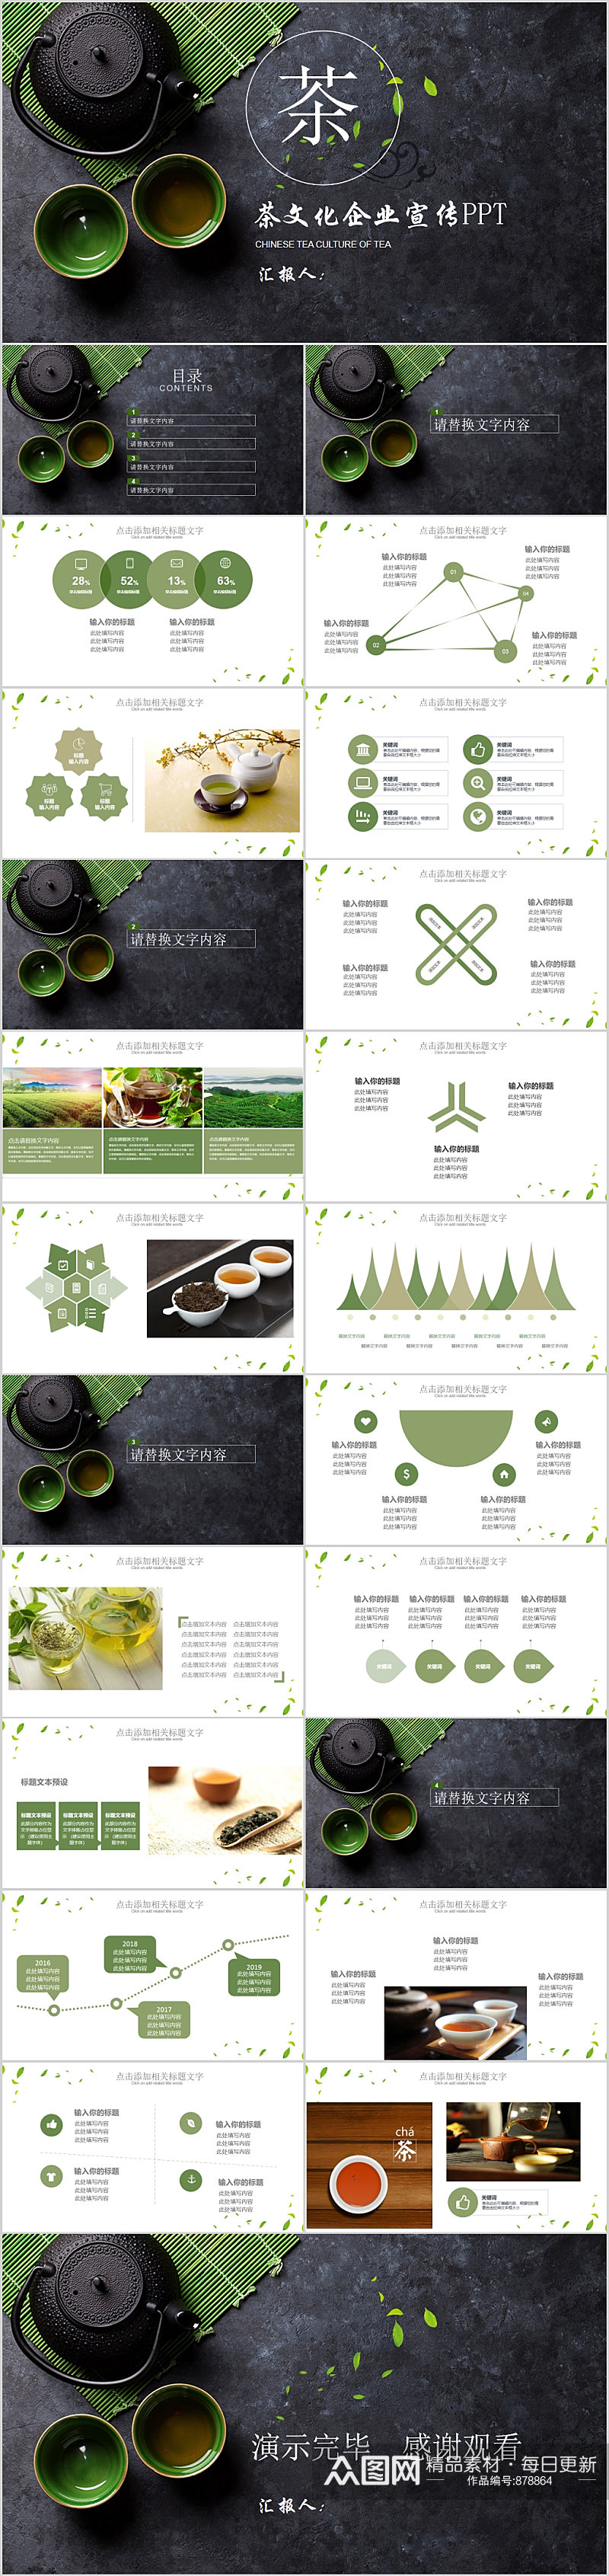 大气茶文化企业宣传PPT模板素材